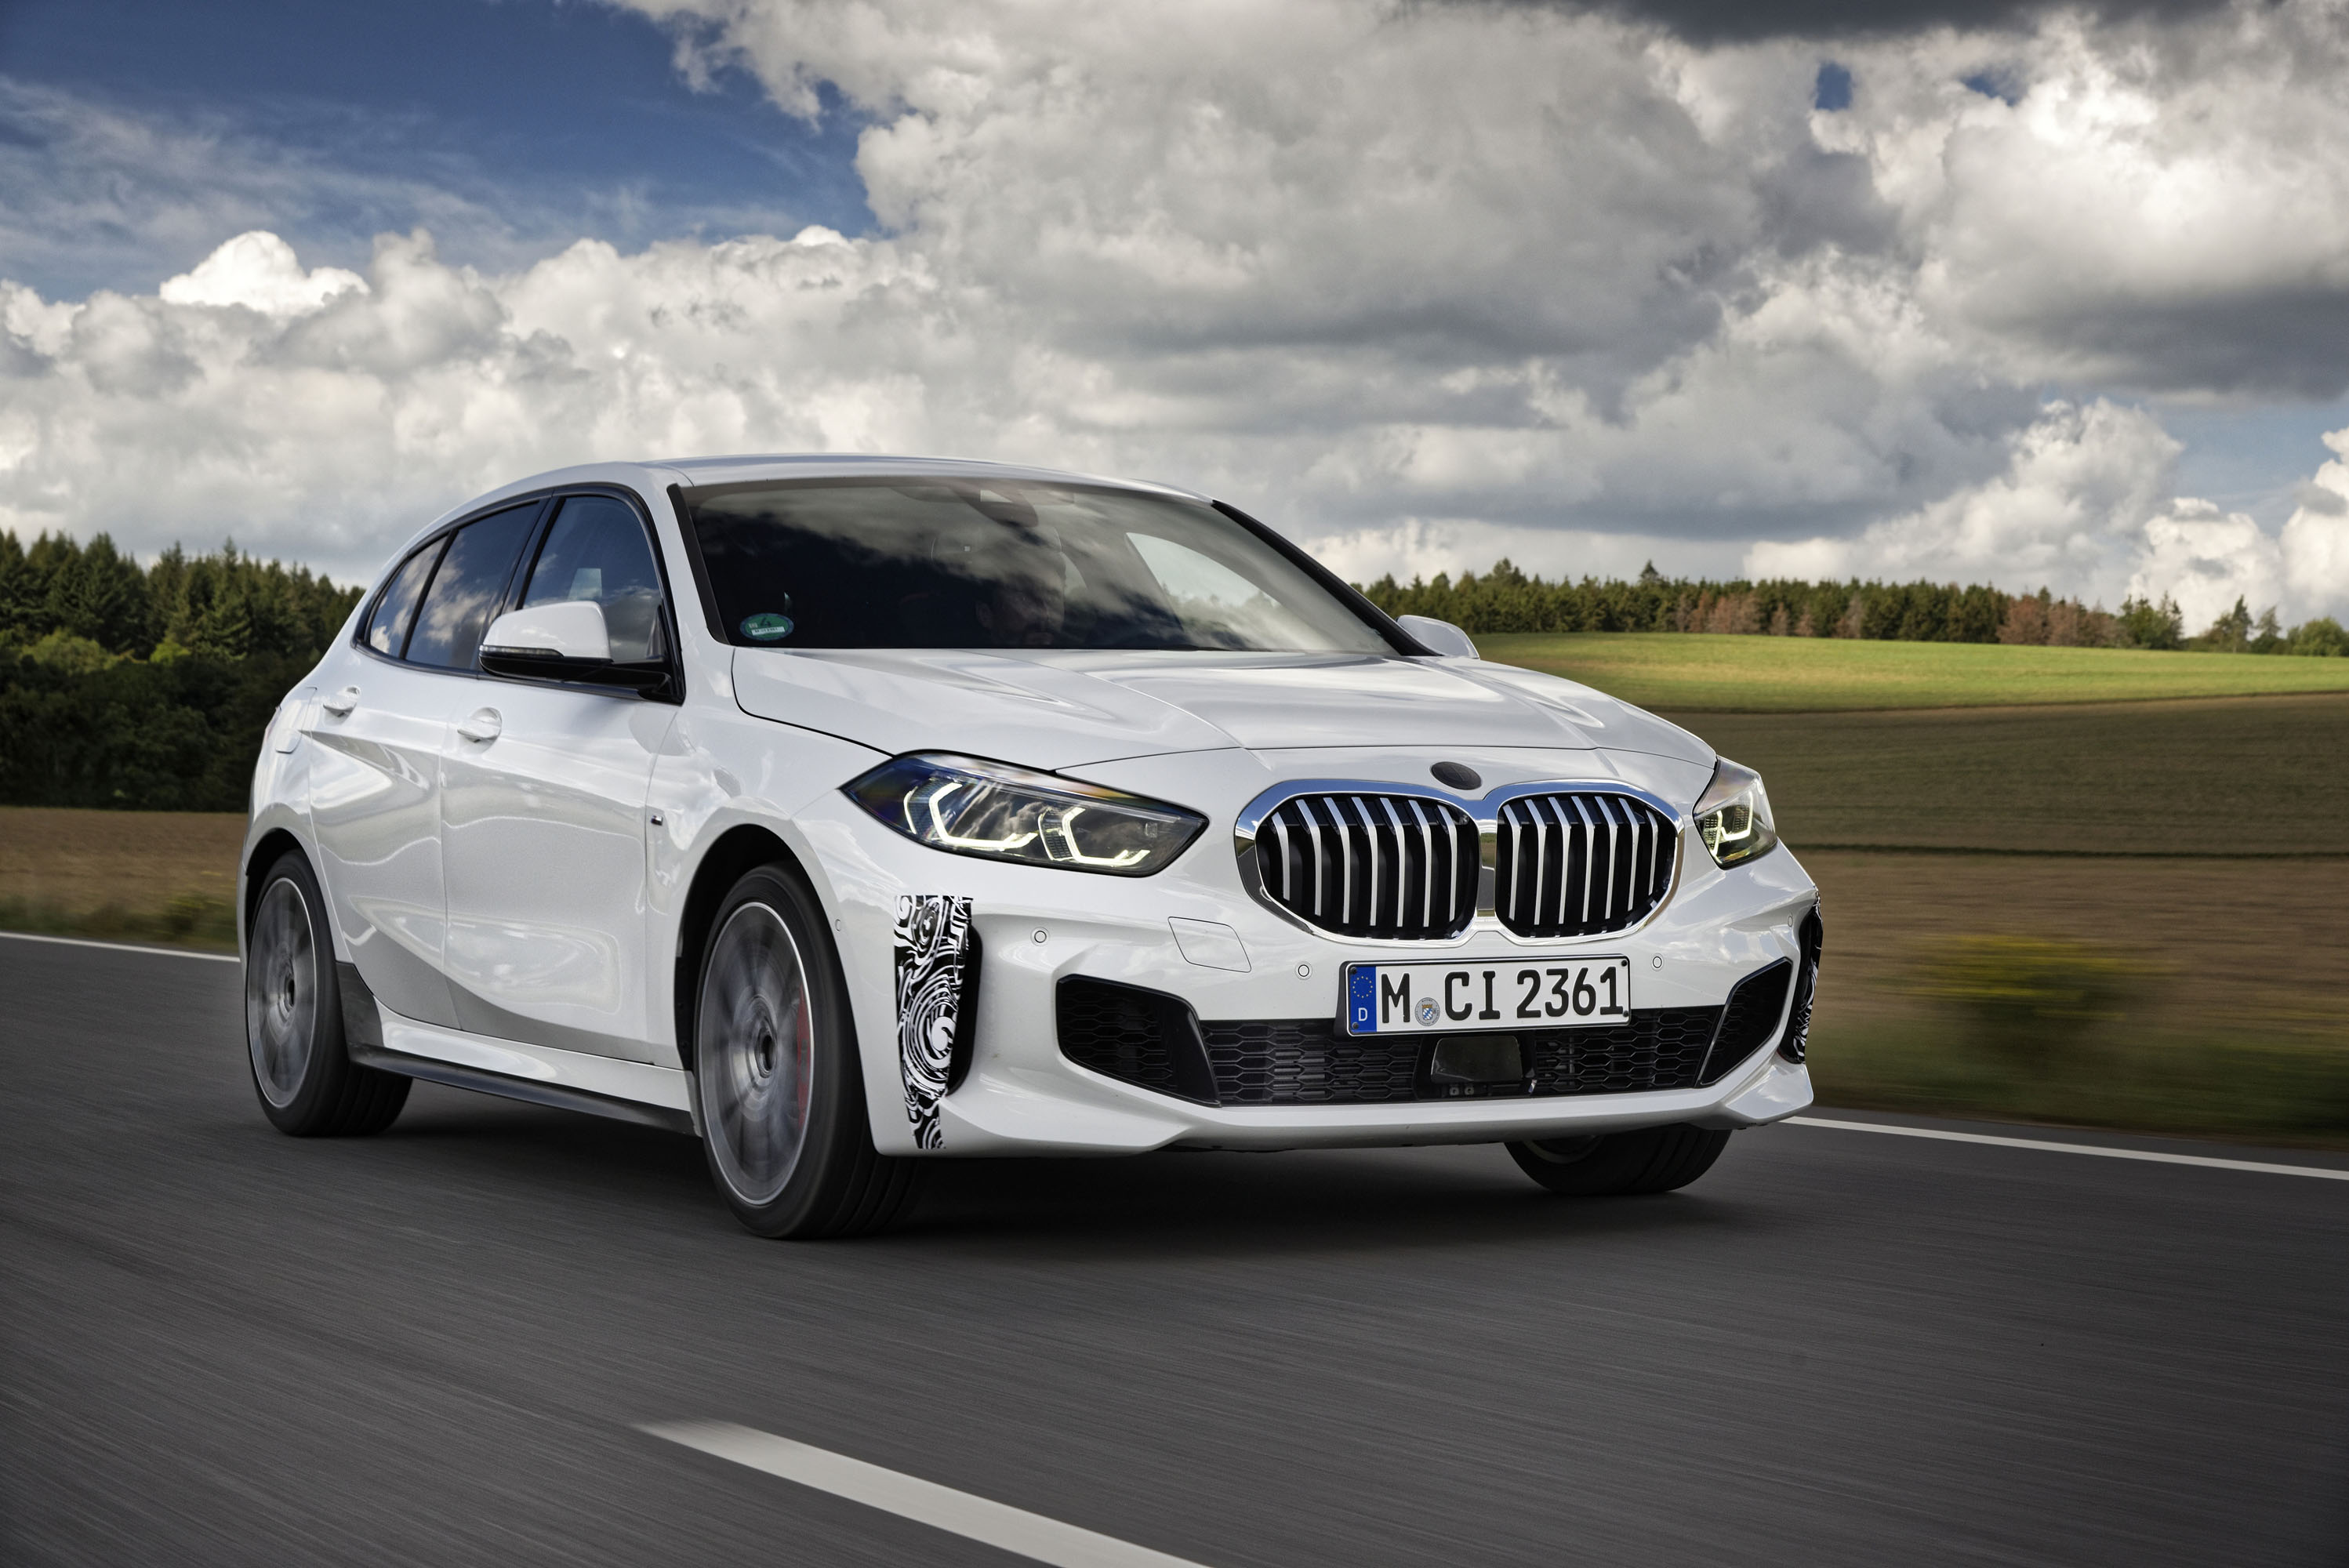 Переднеприводный BMW 128ti расположен непосредственно под топовой моделью BMW 1 серии, BMW M135i xDrive (расход топлива в смешанном цикле: 7,1-6,8 л/100 км; выбросы CO2 в смешанном цикле: 162-154 г/км). Новый 2-литровый четырехцилиндровый двигатель с